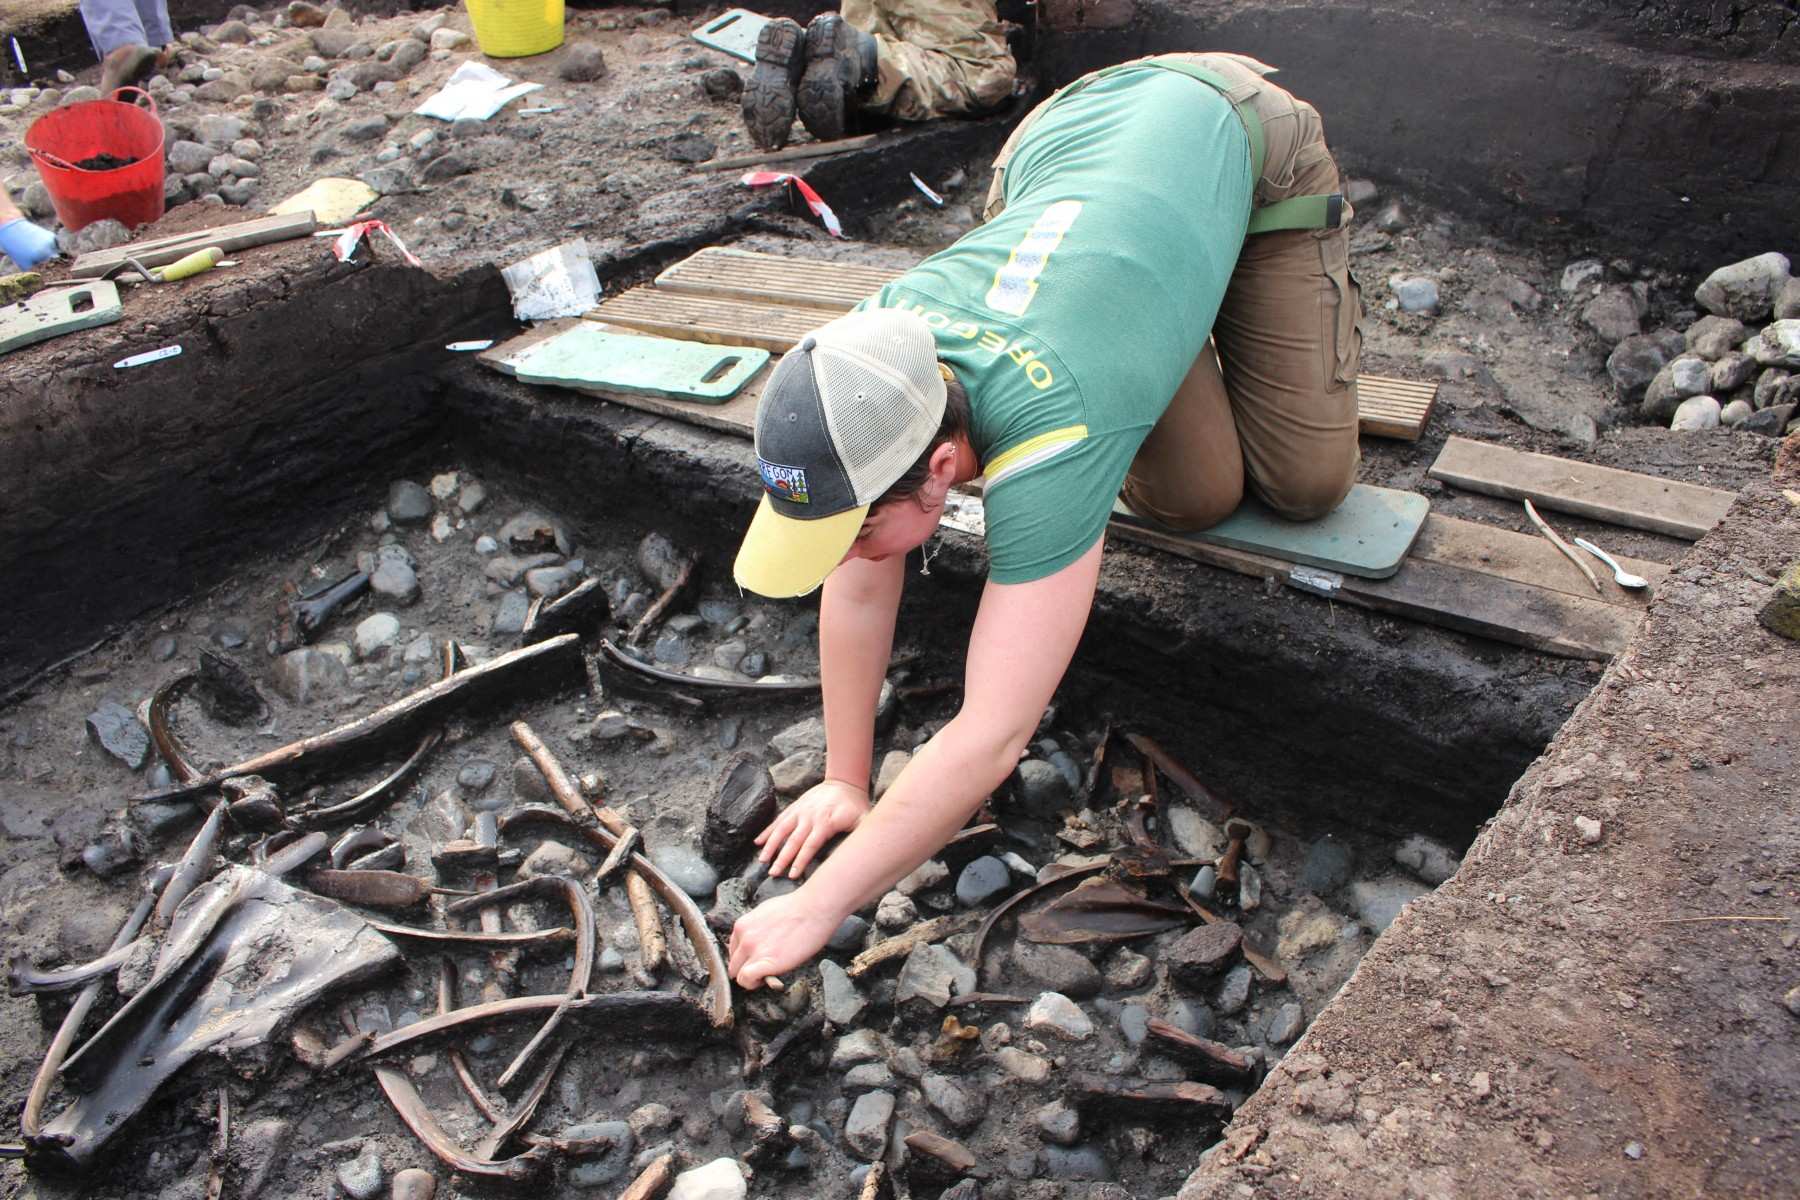 Кости животных, инструменты и оружие, а также редкие свидетельства обработки дерева были обнаружены во время раскопок на участке недалеко от Скарборо.